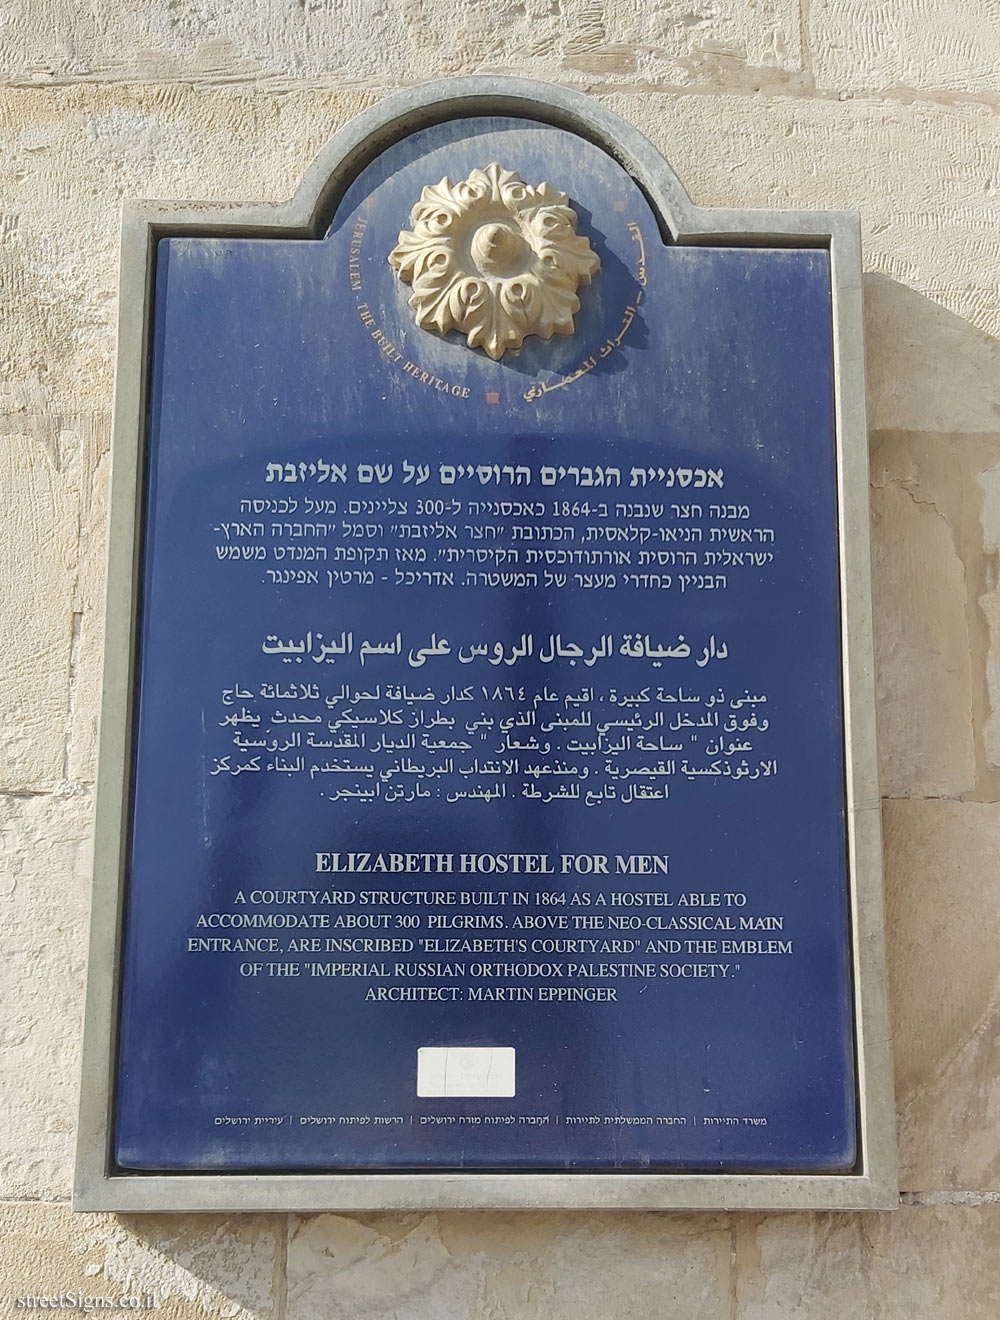 Jerusalem - The Built Heritage - Elizabeth Hostel for Men